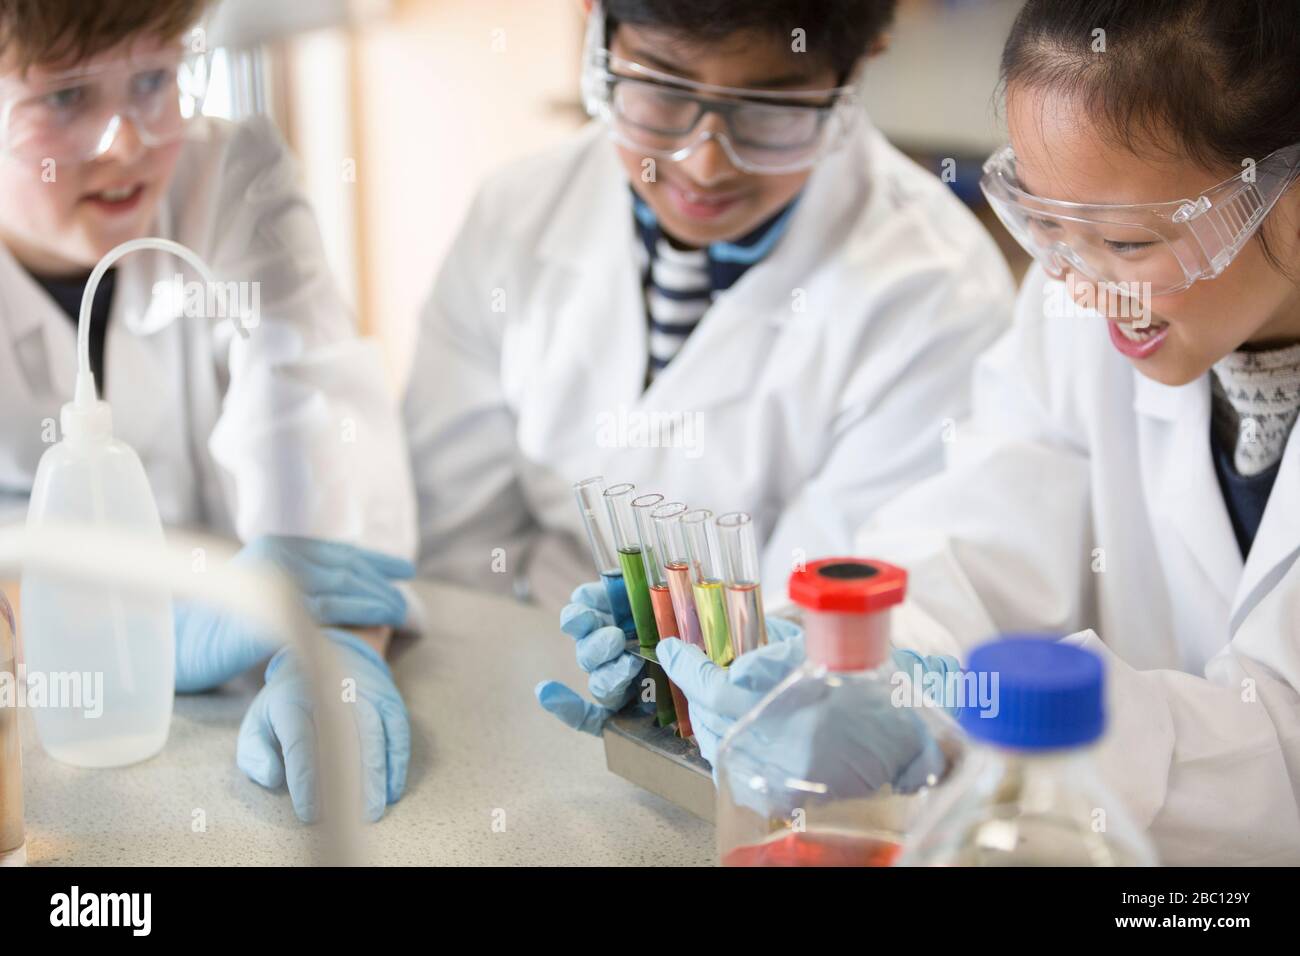 Studenten, die Flüssigkeiten im Reagenzglasgestell untersuchen und wissenschaftliche Experimente im Laborraum durchführen Stockfoto